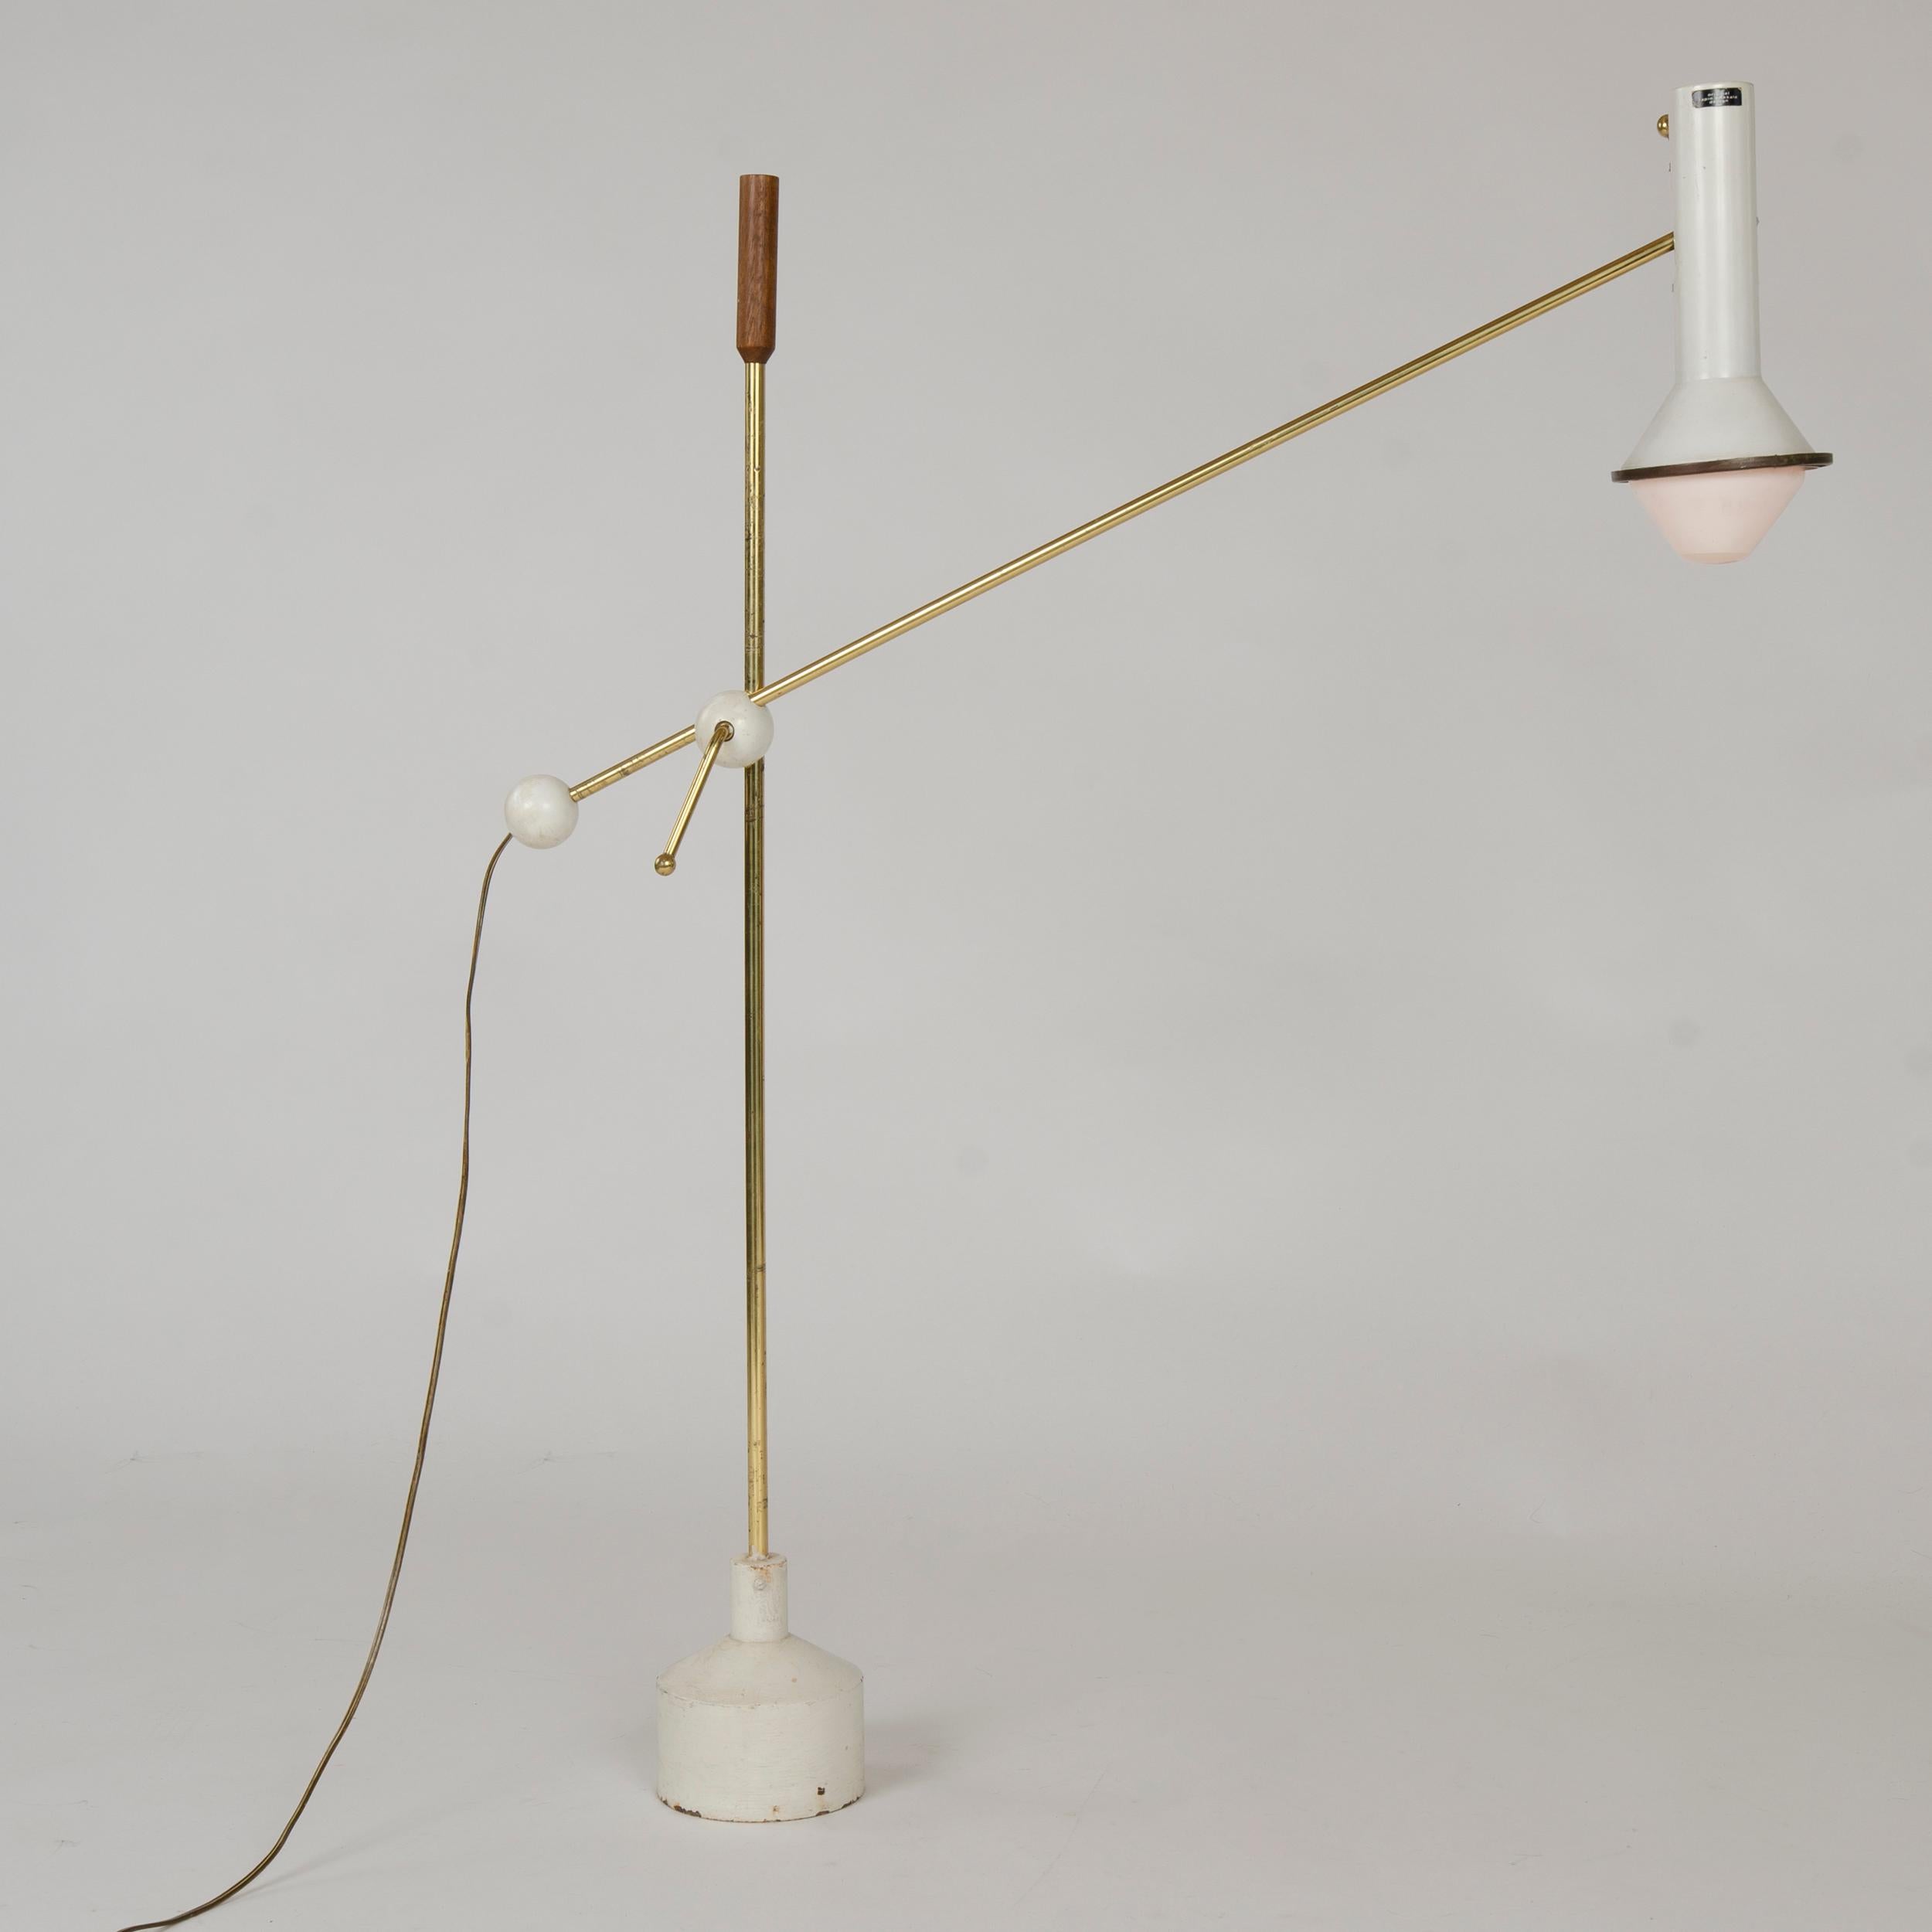 Iron 1950s Finnish Adjustable Floor Lamp by Tapio Wirkkala for Idman Oy